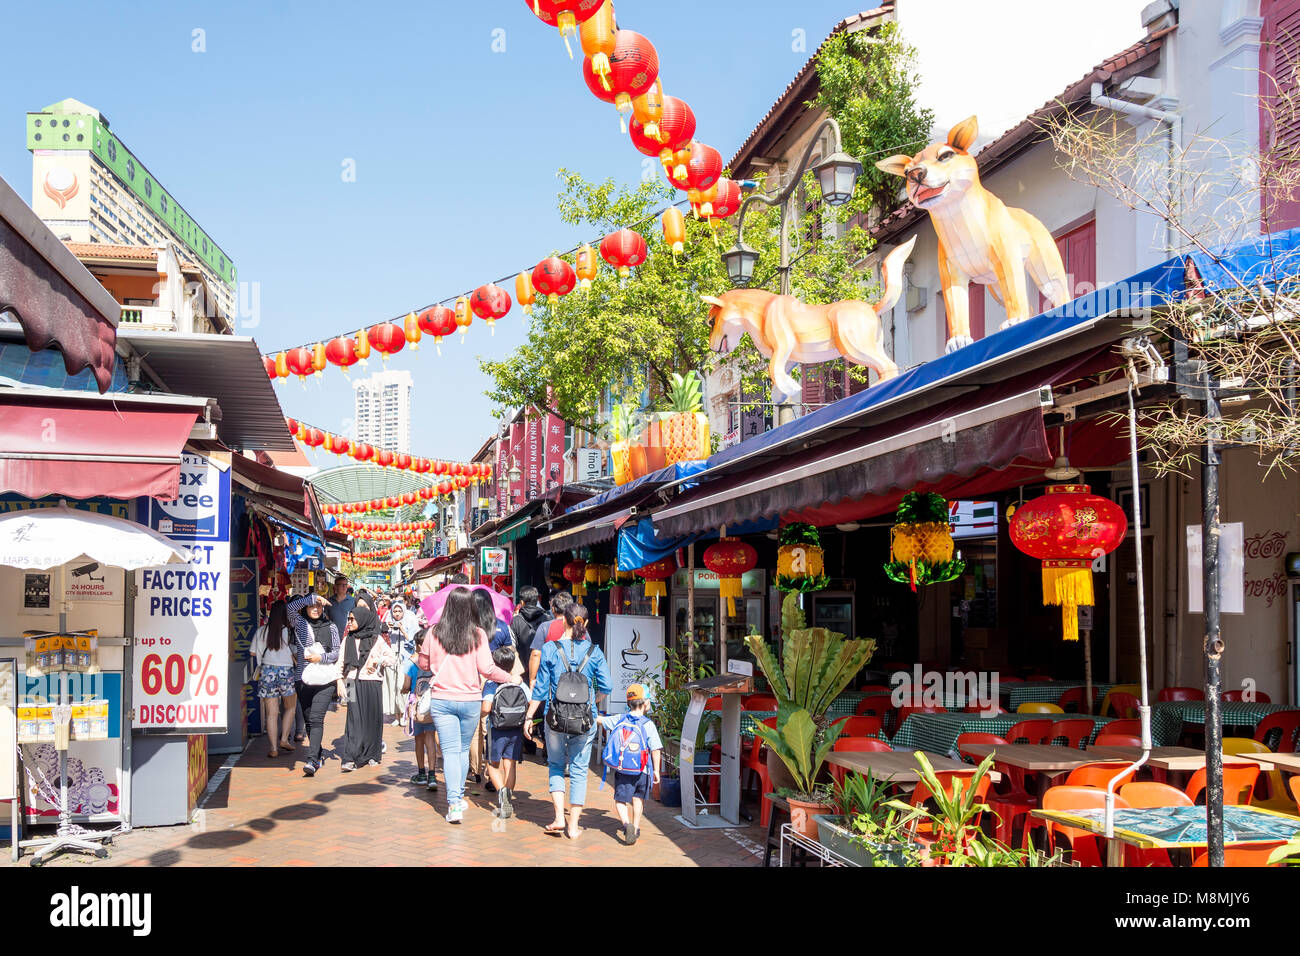 Geschäfte und Restaurants auf Pagoda Street, Chinatown, Outram District, Central Area, Singapur Insel (Pulau Ujong), Singapur Stockfoto